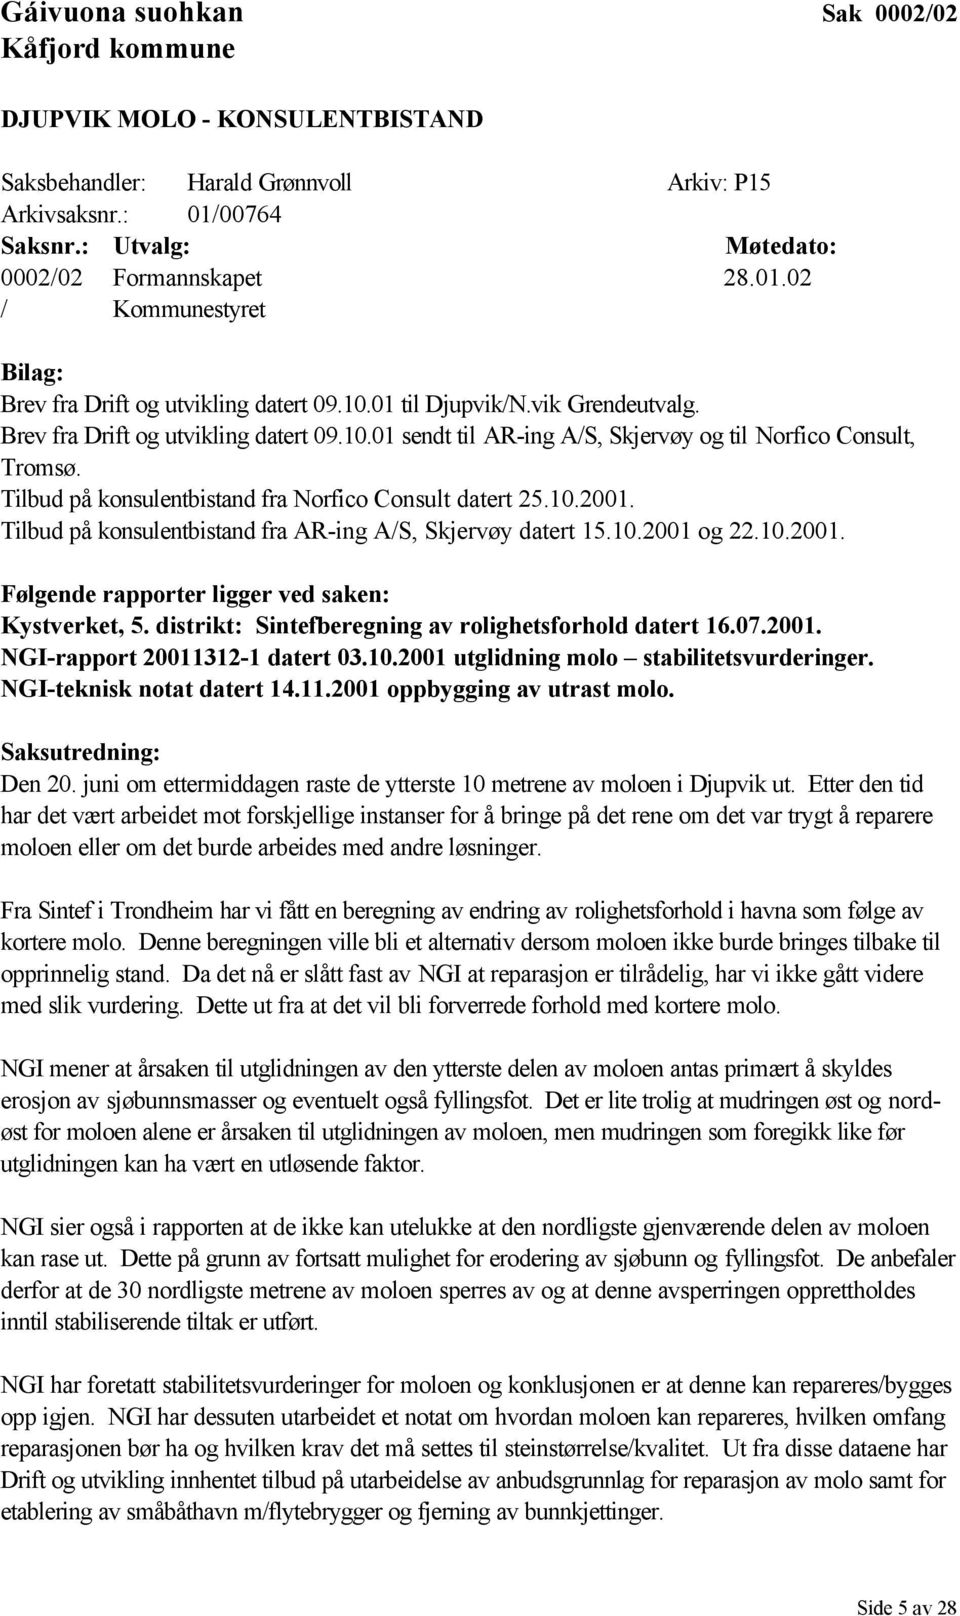 Brev fra Drift og utvikling datert 09.10.01 sendt til AR-ing A/S, Skjervøy og til Norfico Consult, Tromsø. Tilbud på konsulentbistand fra Norfico Consult datert 25.10.2001.